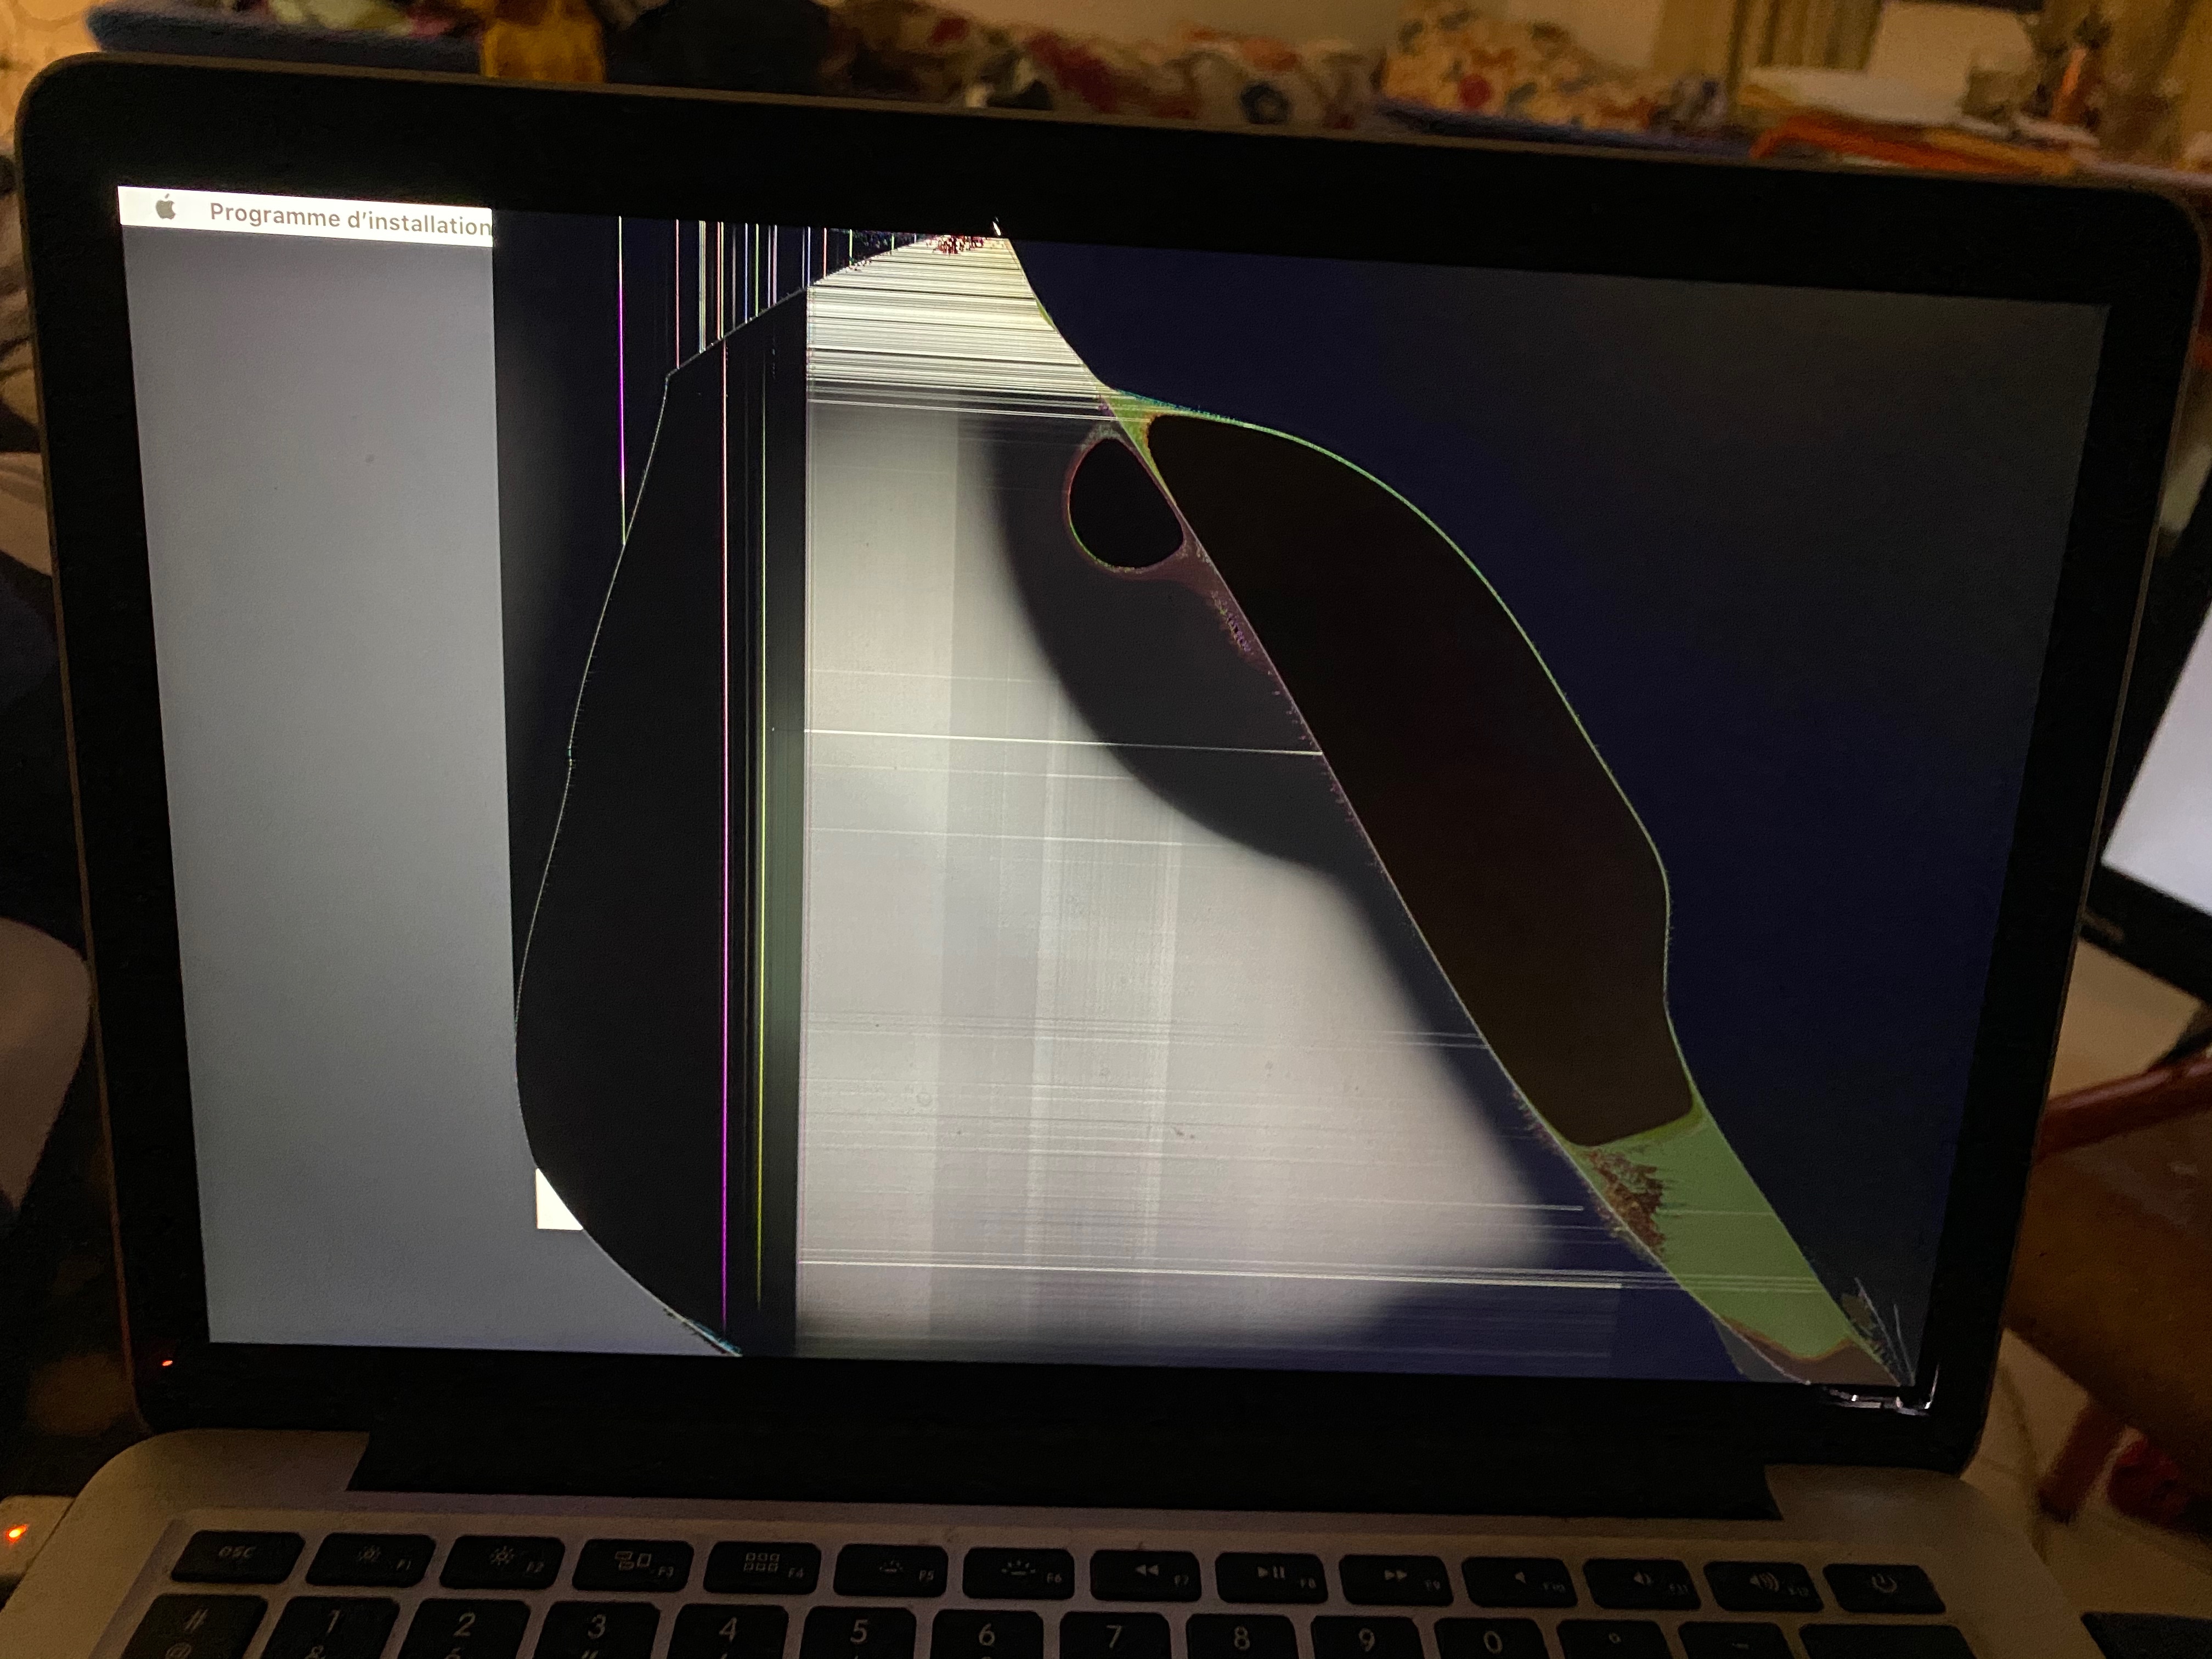 Broken Screen Apple Community, How To Mirror Macbook With Broken Screen